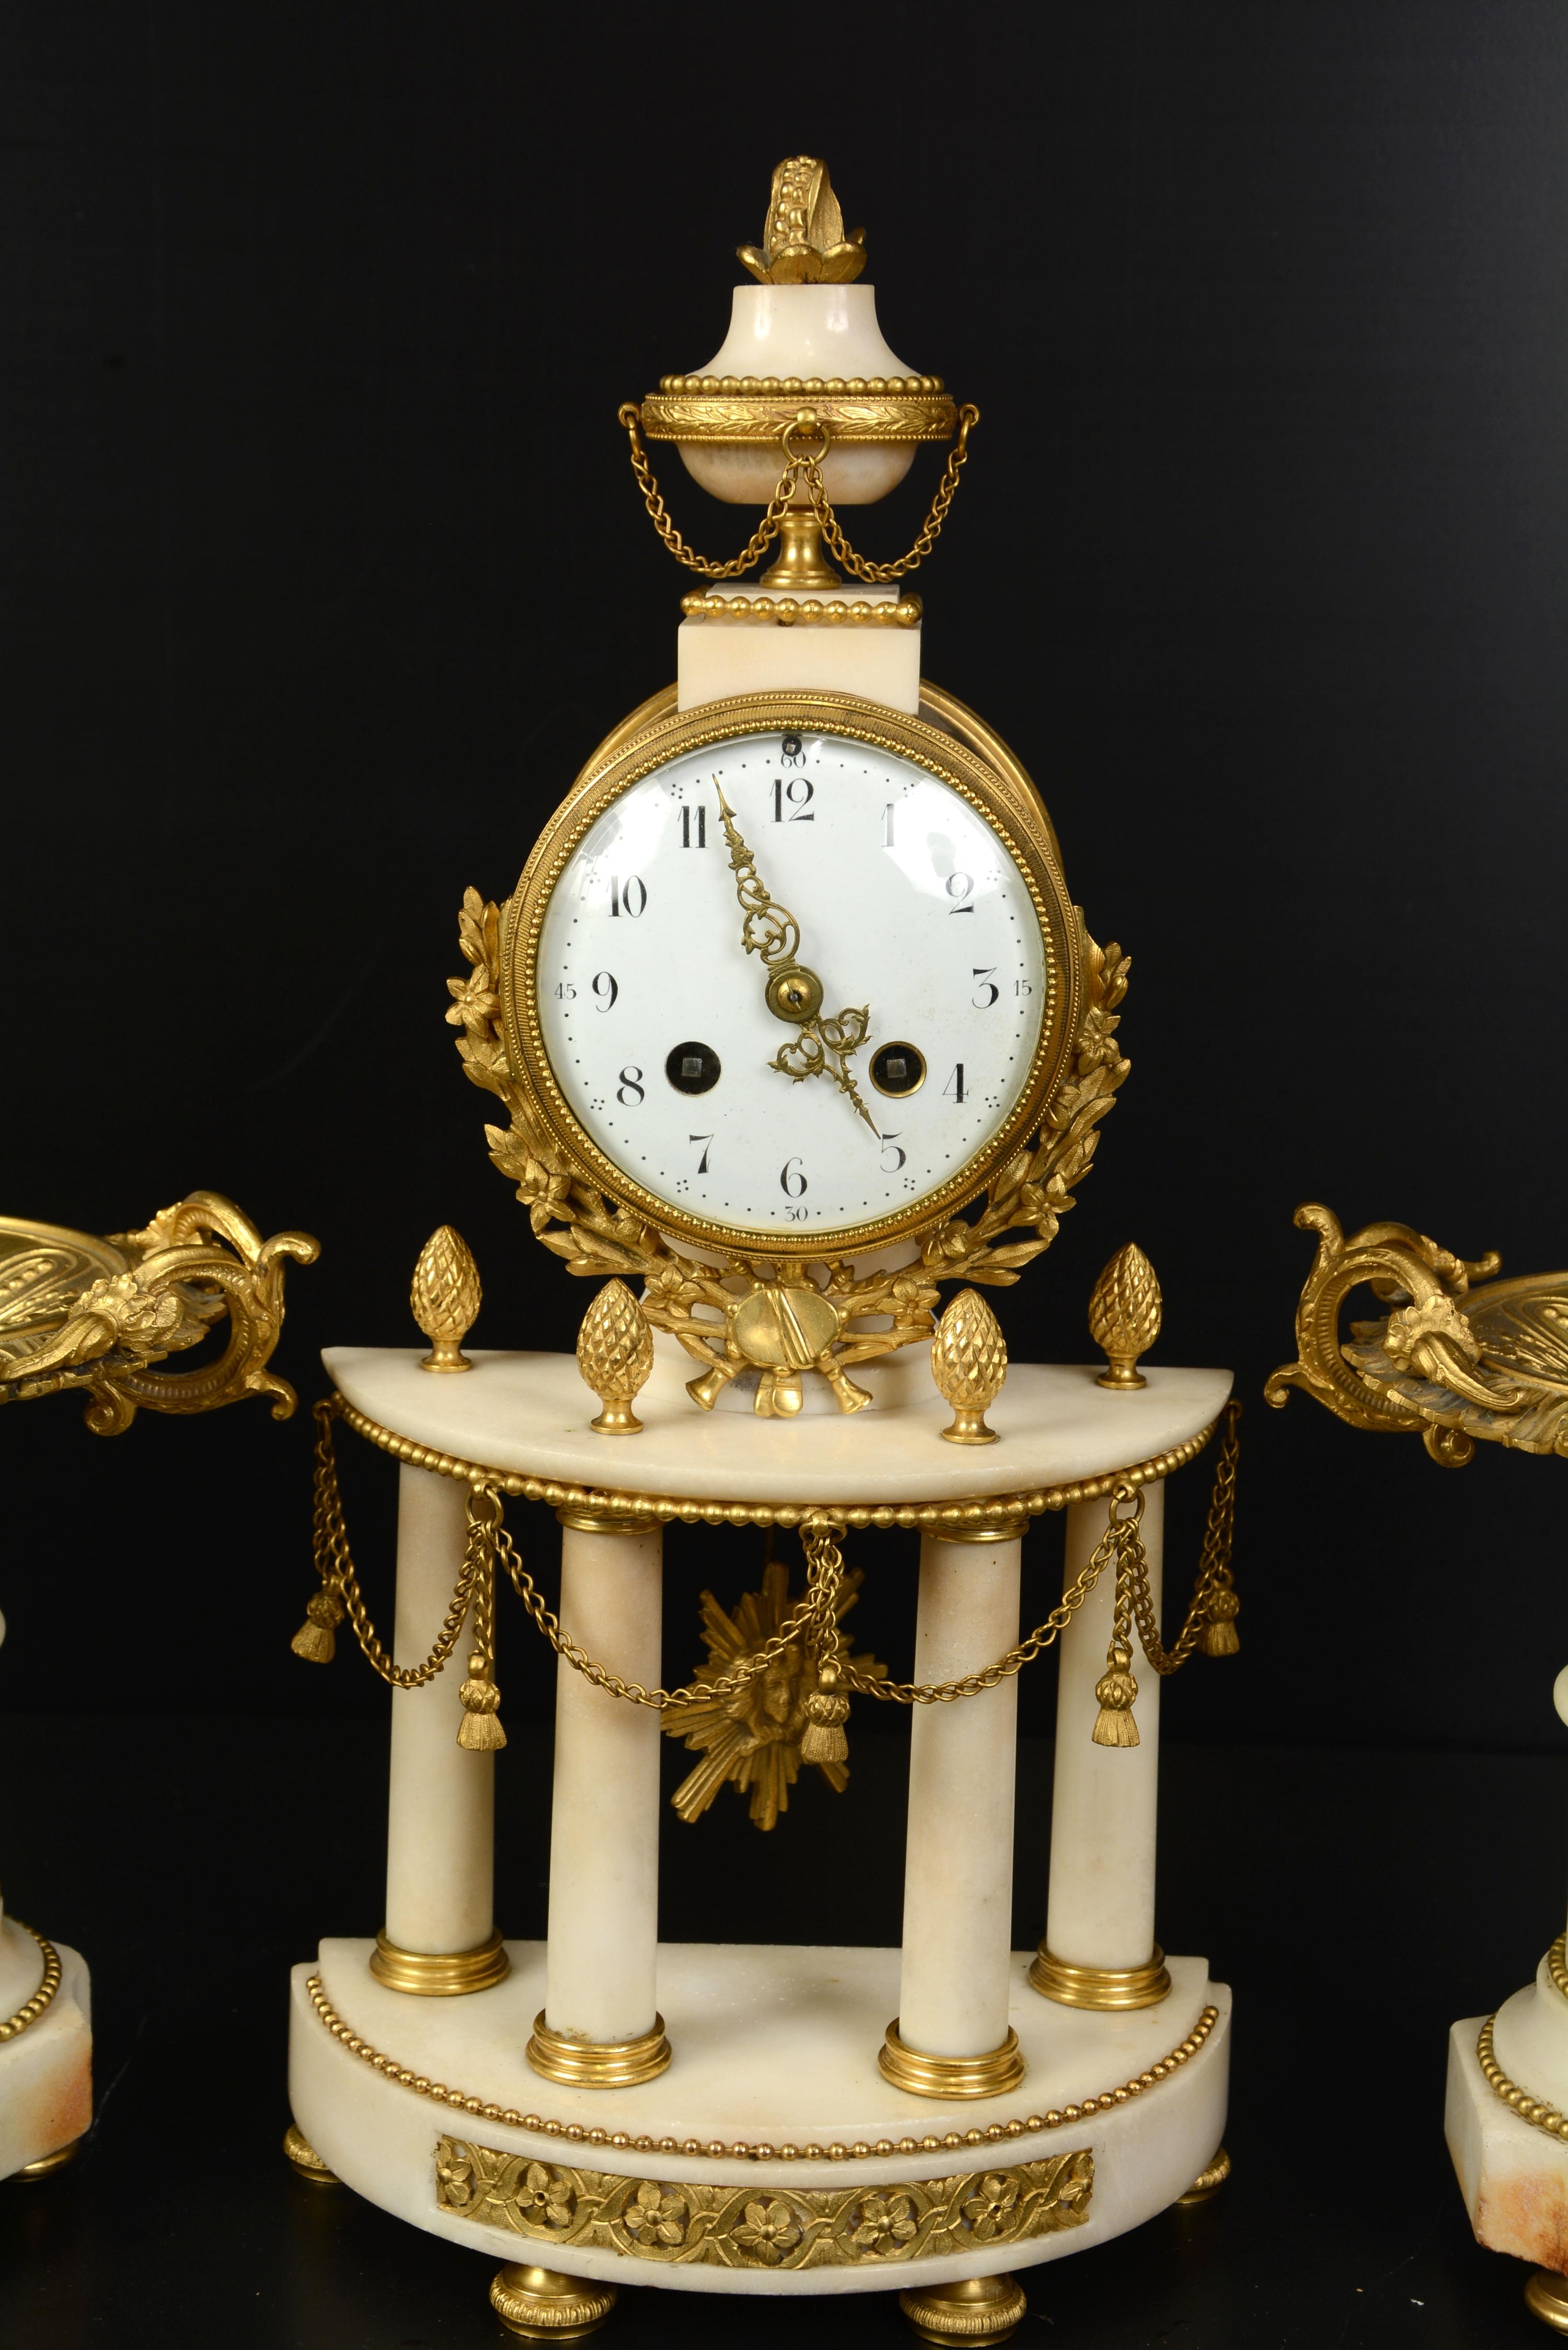 Zwei Tassen auf Sockeln und eine Uhr.
Der französische Stil, der als Louis XVI bekannt ist, zeichnet sich durch seine Inspiration durch den Klassizismus aus und umfasst etwa den Zeitraum von 1760 bis 1789. Im 19. Jahrhundert wurden zahlreiche